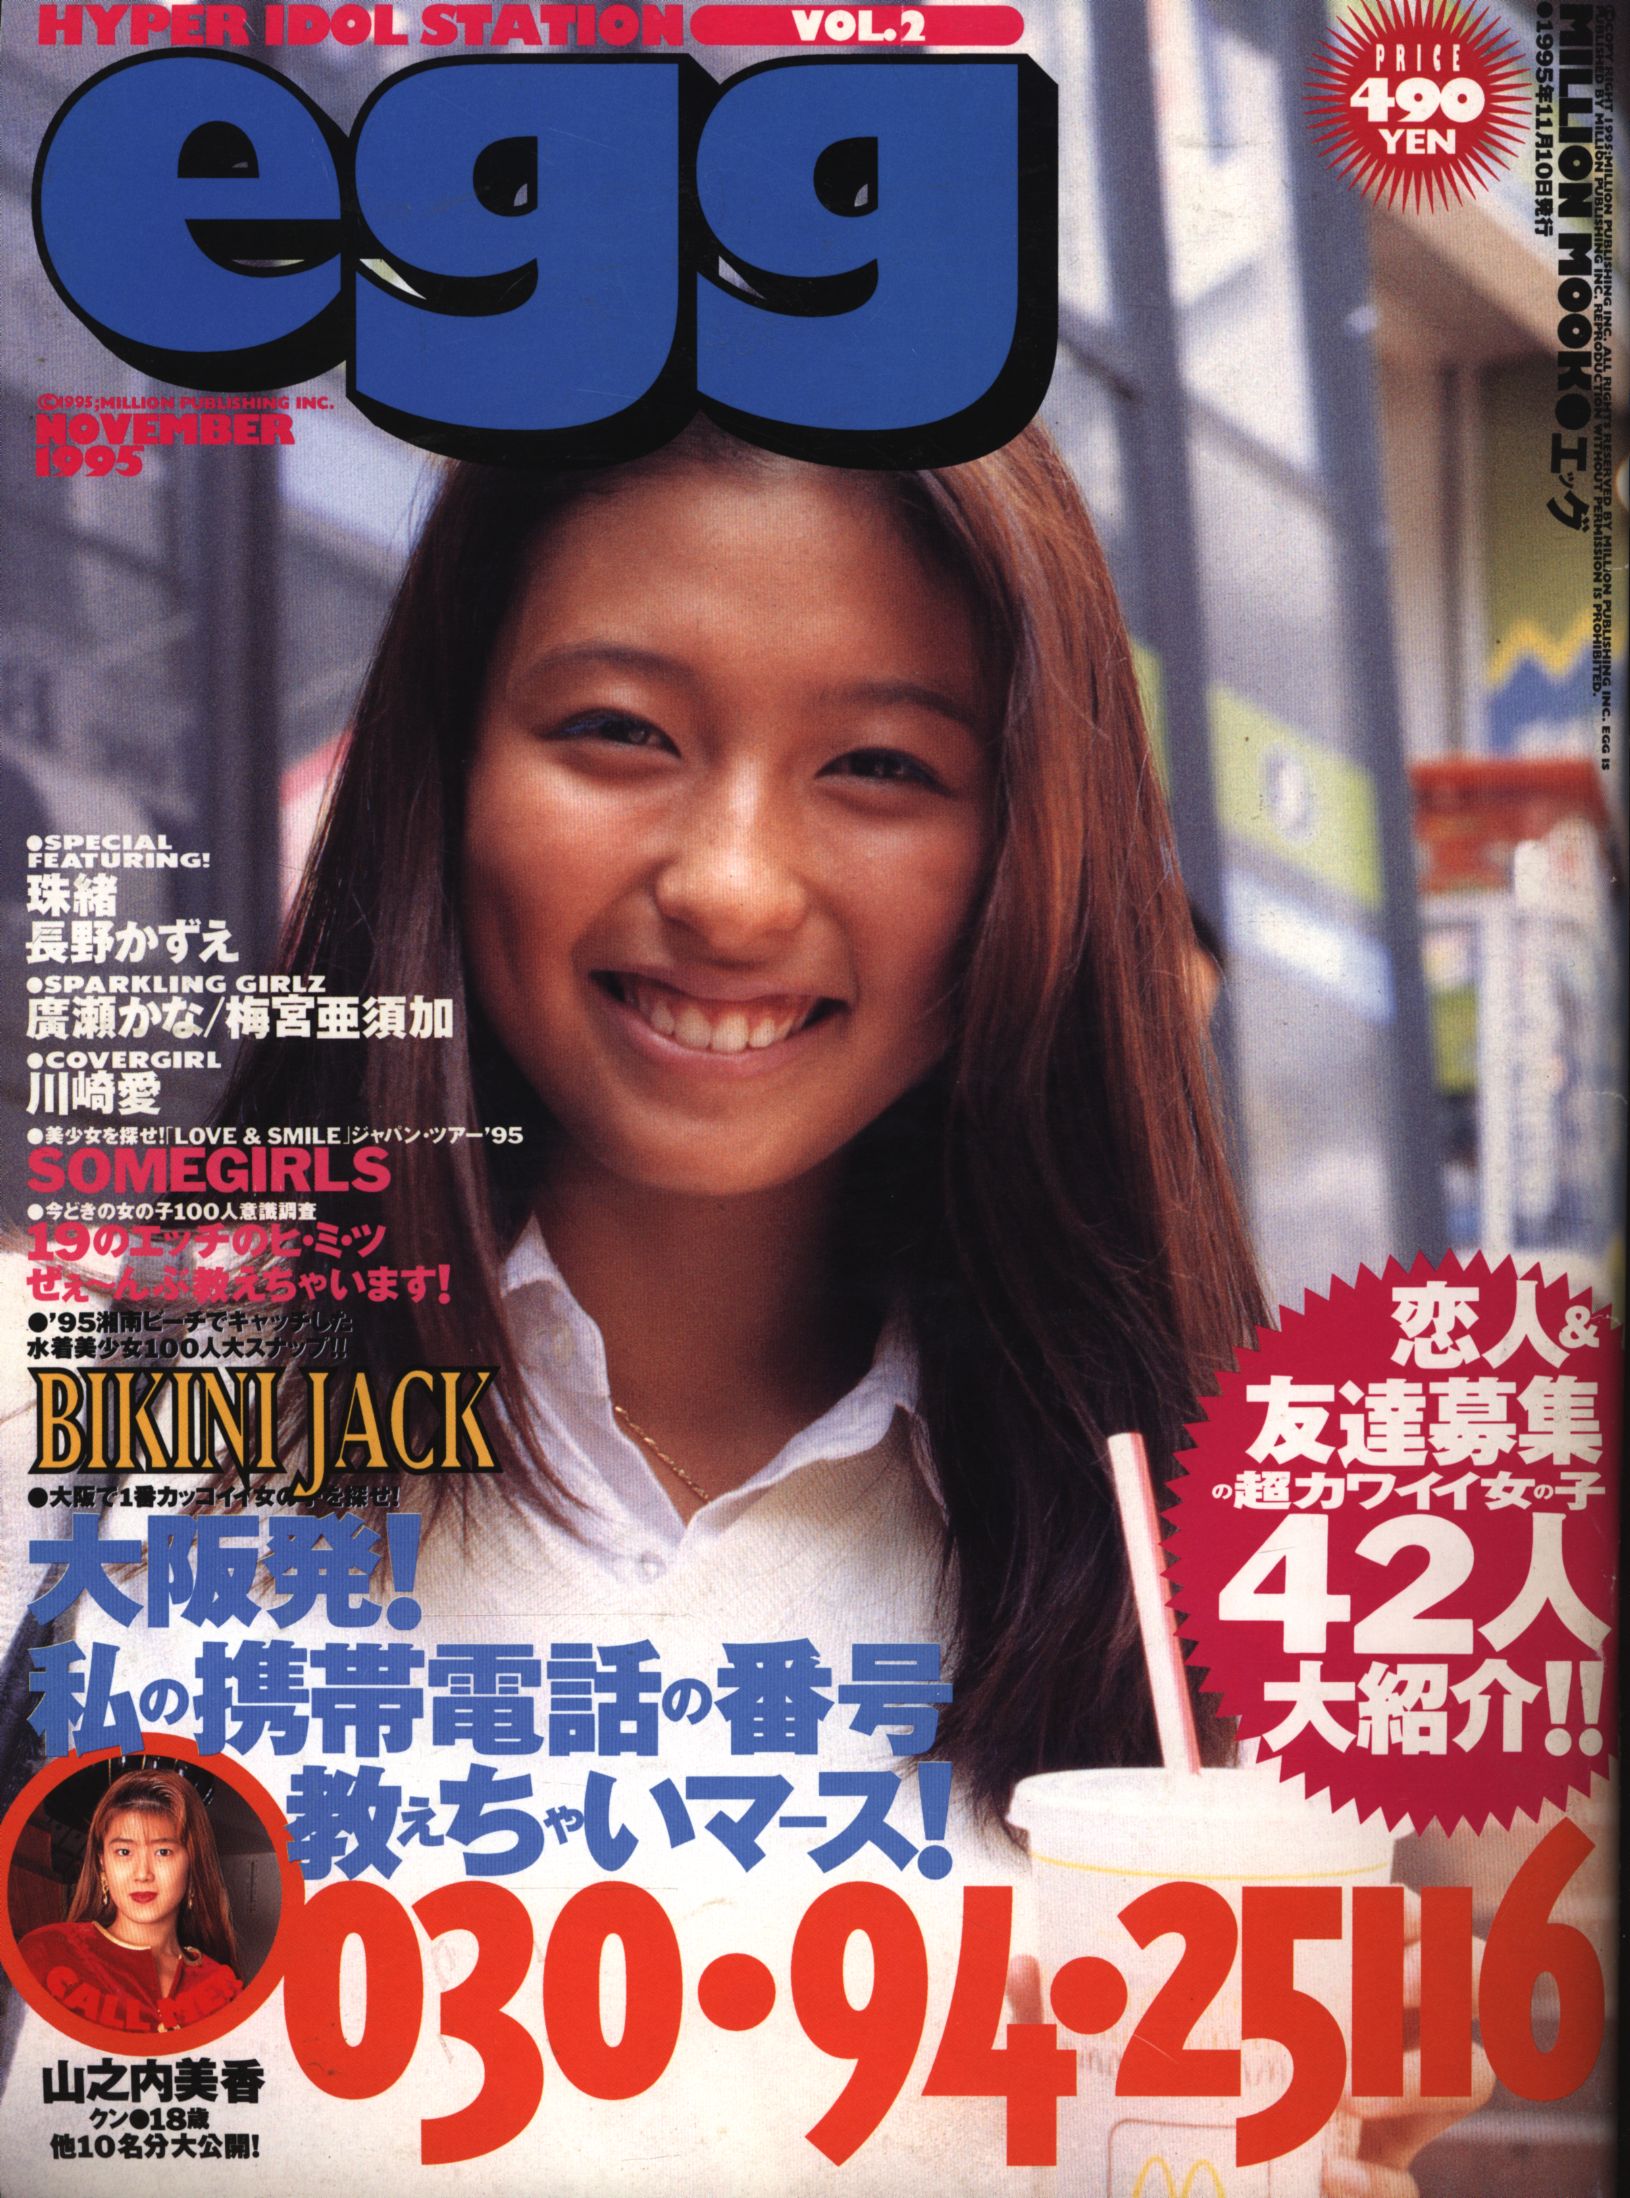 雑誌 egg 11冊セットVOL.1 1995〜 激安オンライン店 - clinicaviterbo 